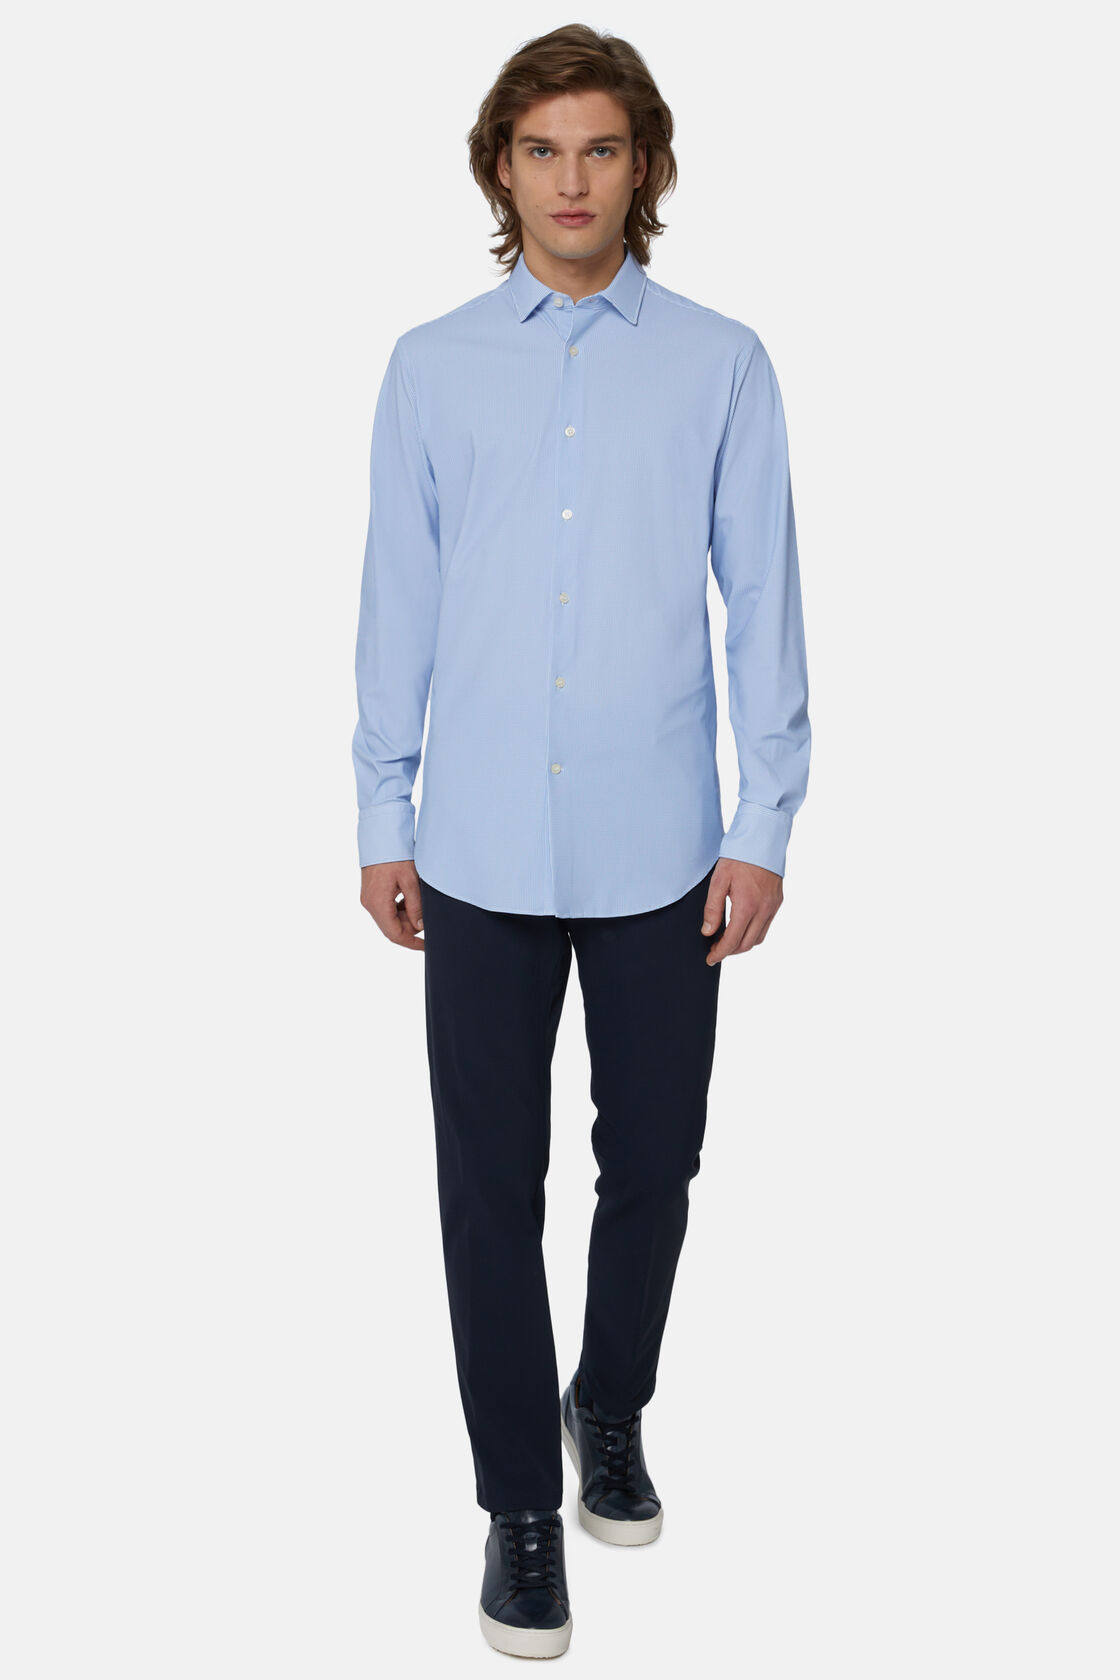 Camisa de nylon elástico azul celeste de ajuste slim, Light Blue, hi-res